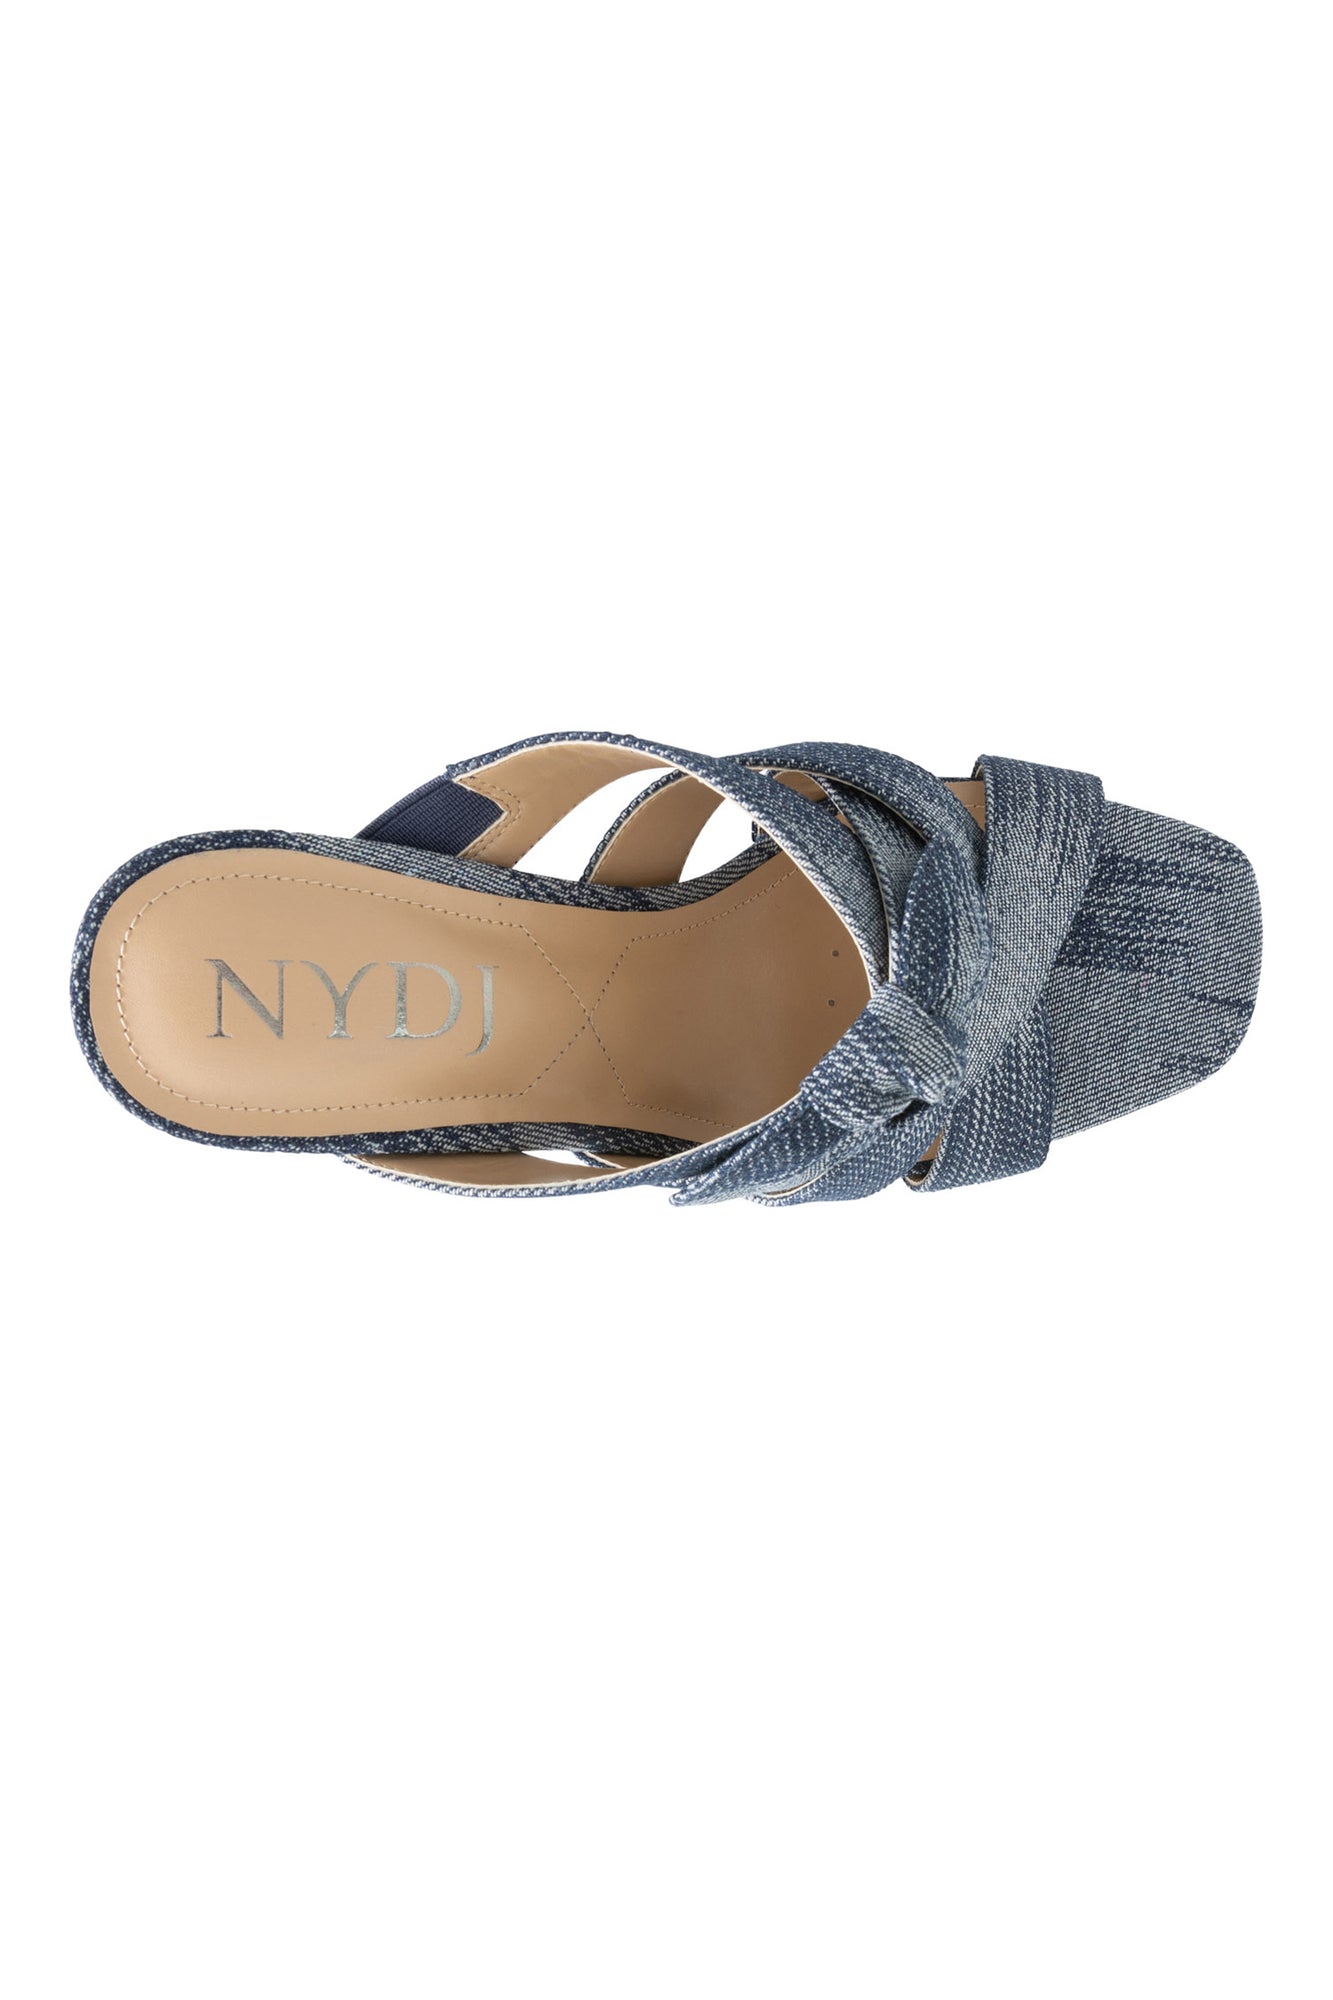 NYDJ Loreri Mule Sandals In Streaked Denim - Dark Blue